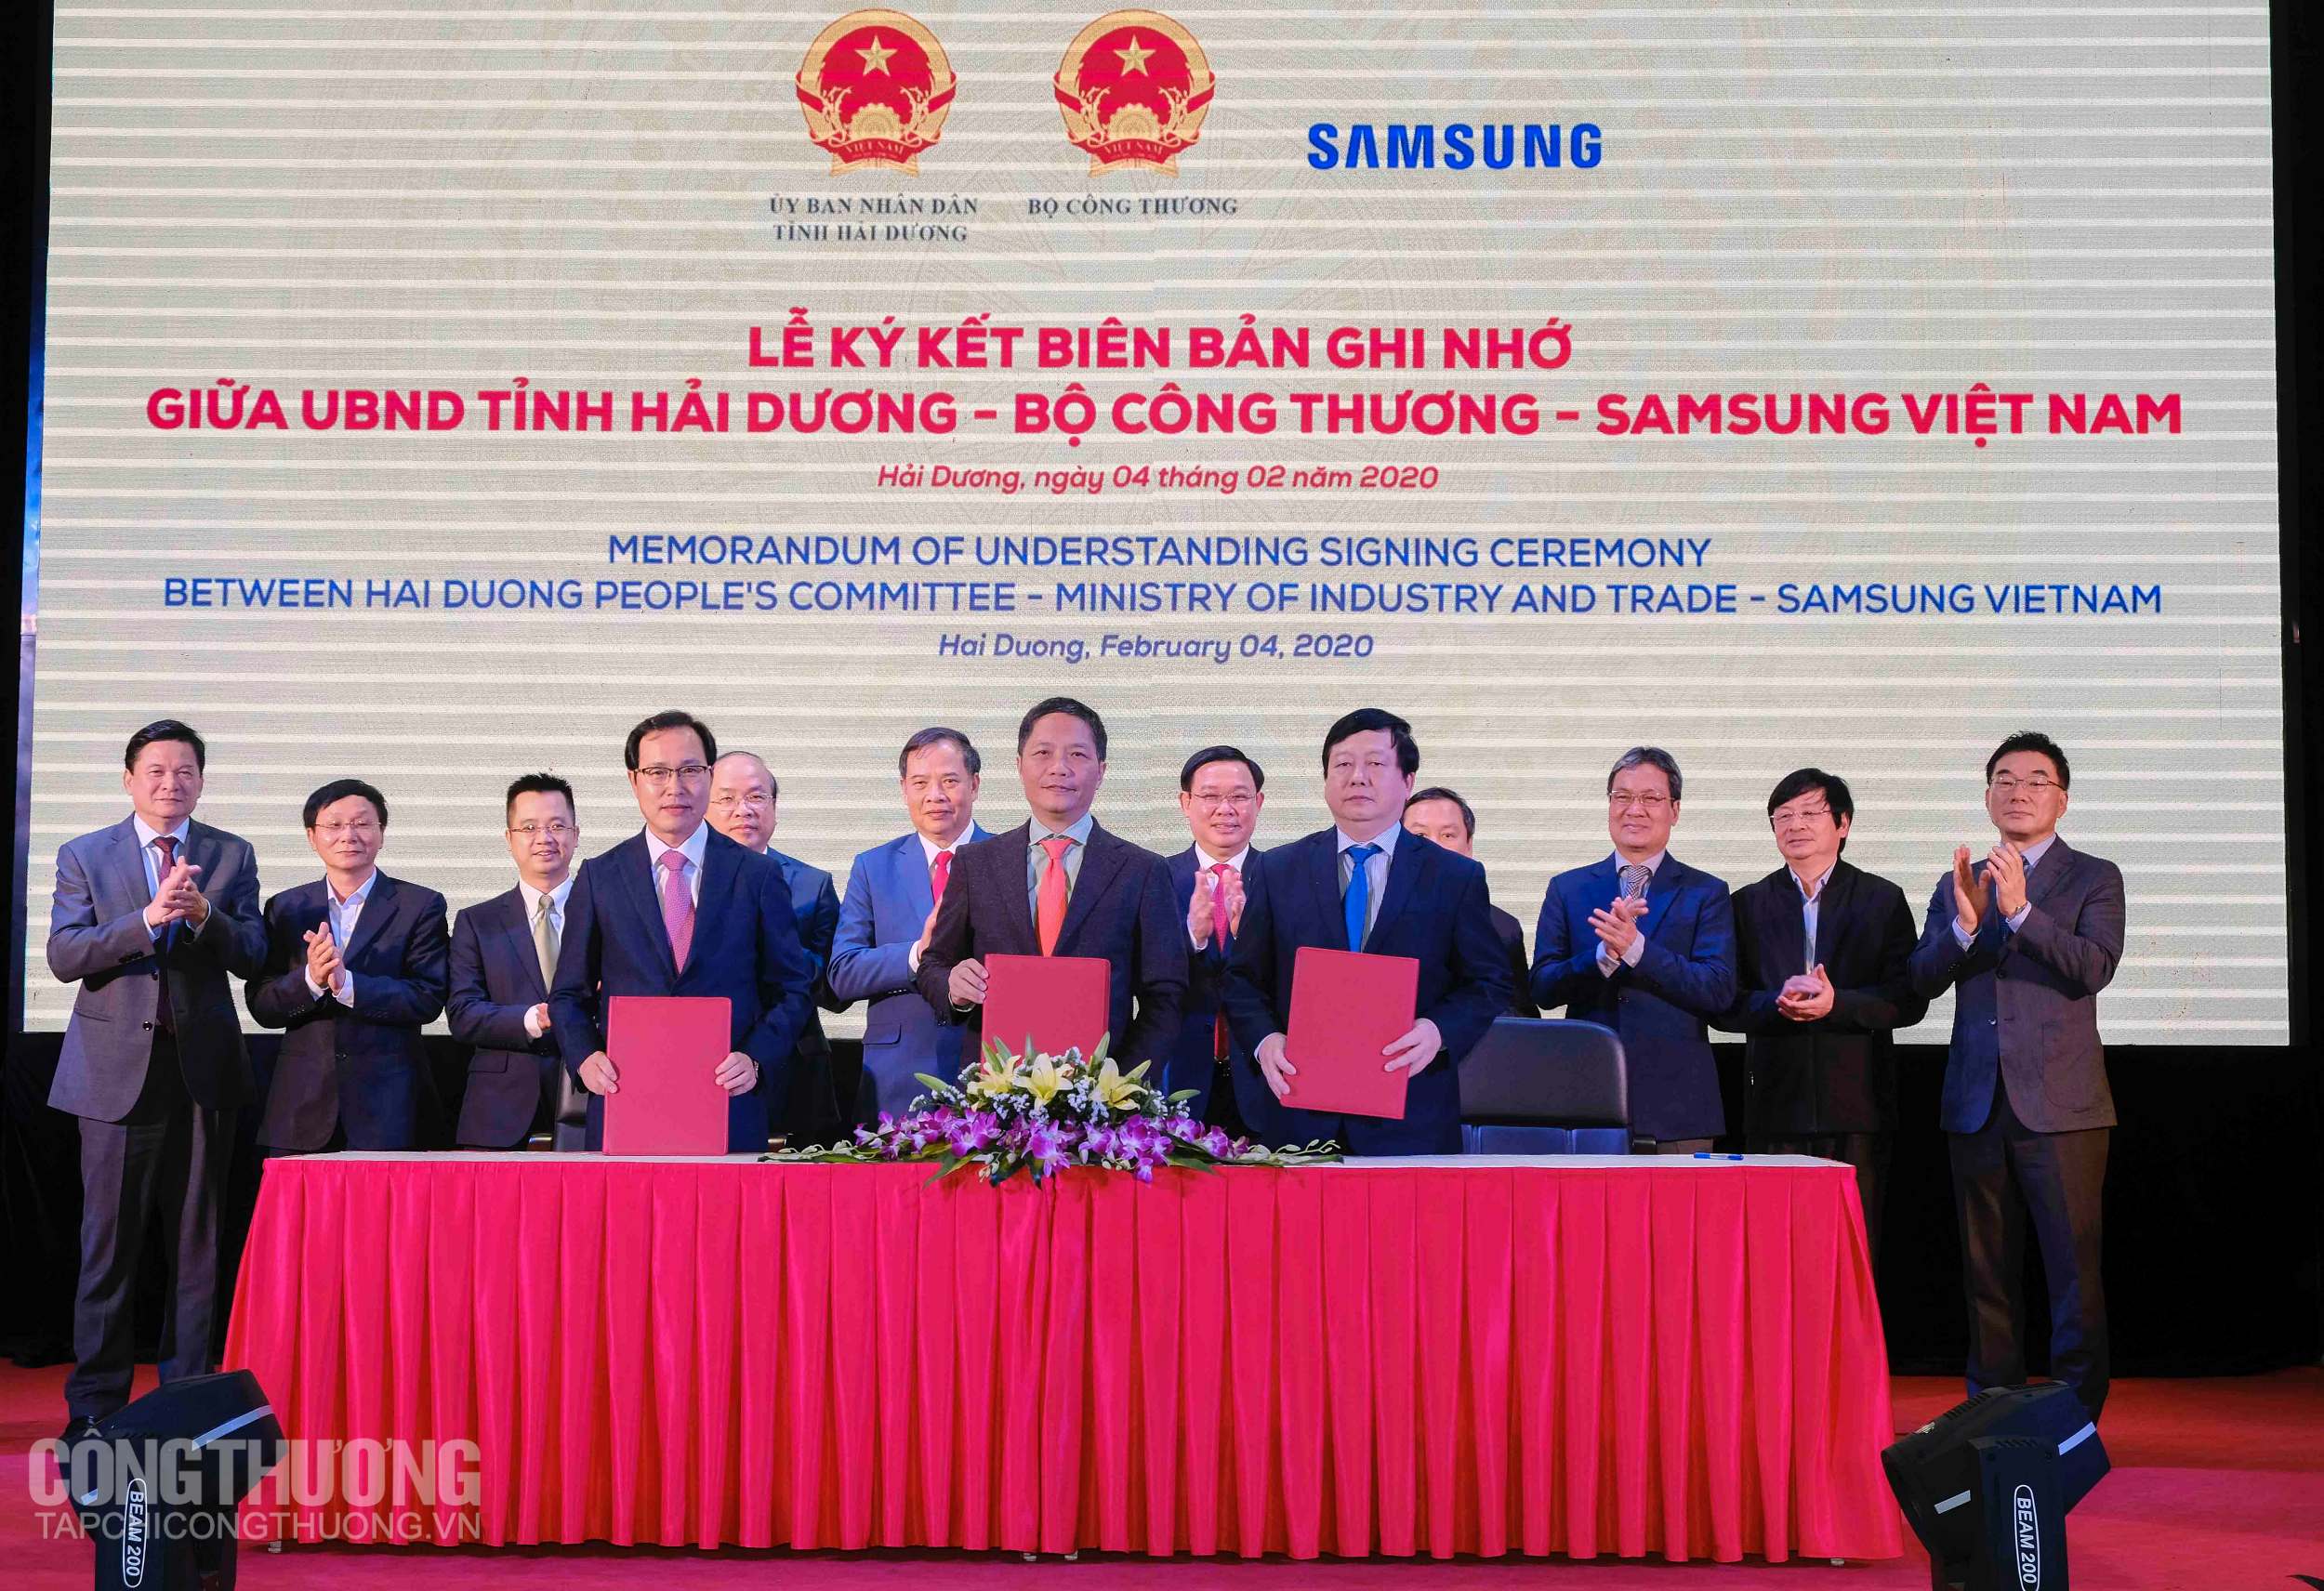 Đại diện Bộ Công Thương, Samsung Việt Nam và UBND tỉnh Hải Dương ký kết Biên bản ghi nhớ hợp tác ba bên về phát triển công nghiệp hỗ trợ tại Hải Dương